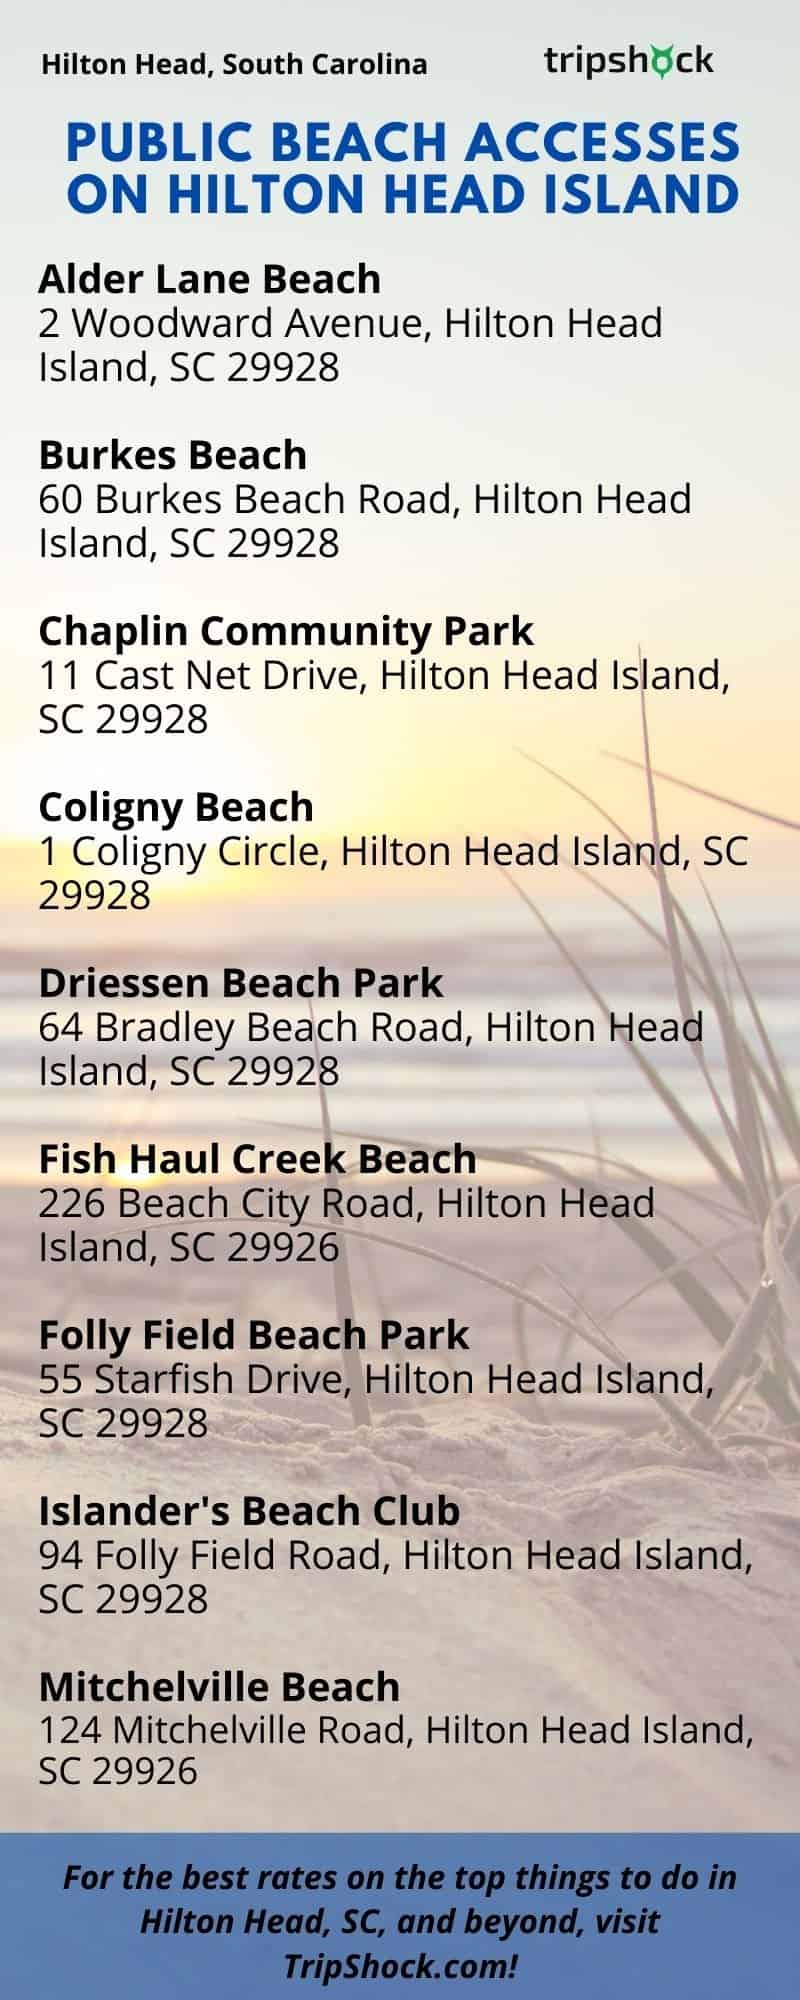 Public Beach Accesses on Hilton Head Island